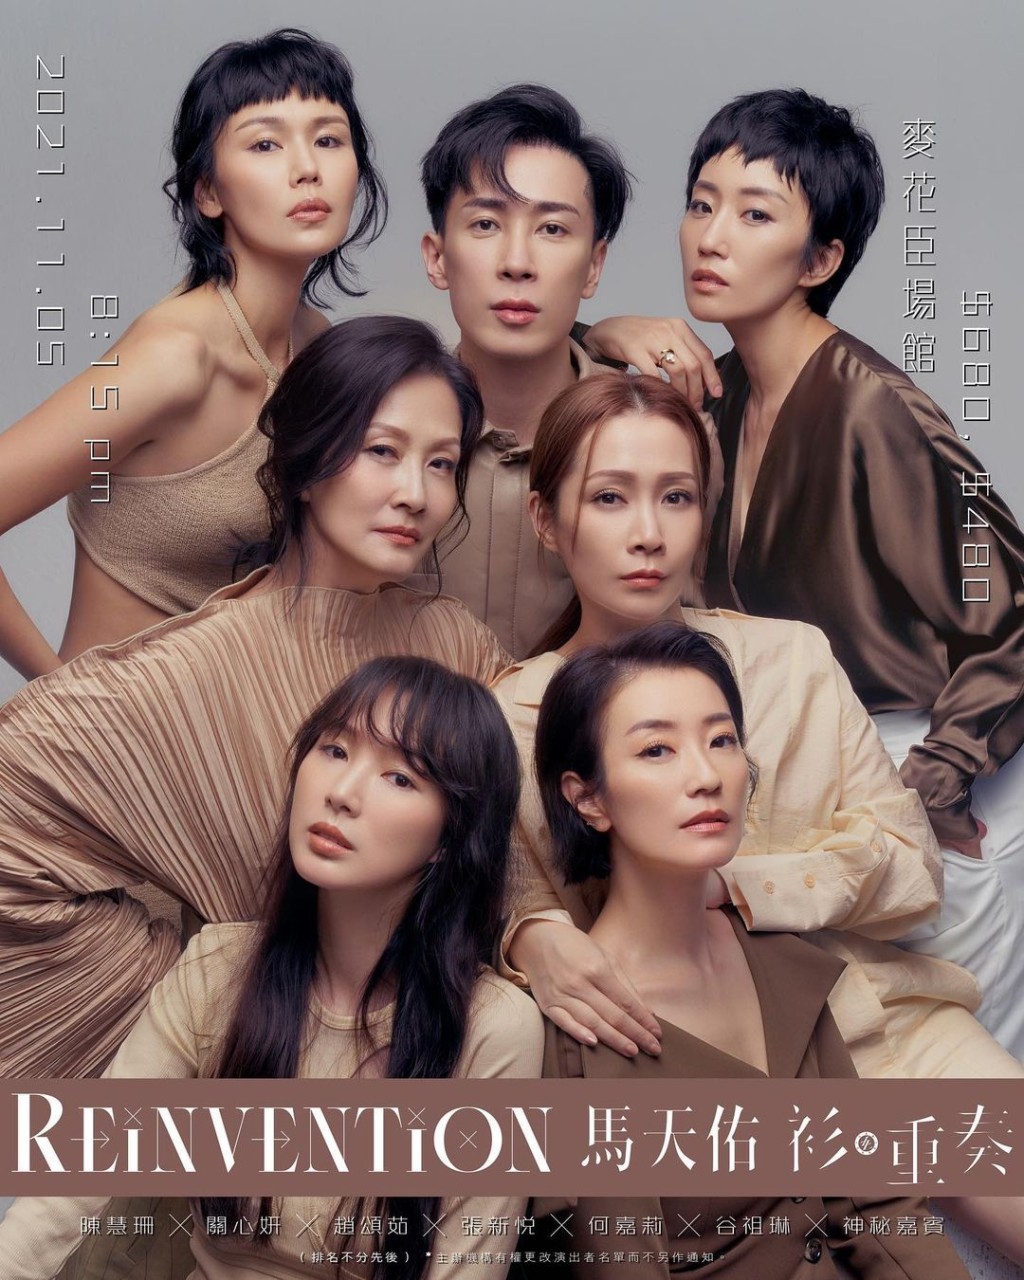 赵颂茹曾为《Reinvention马天佑 衫。重奏》演出。